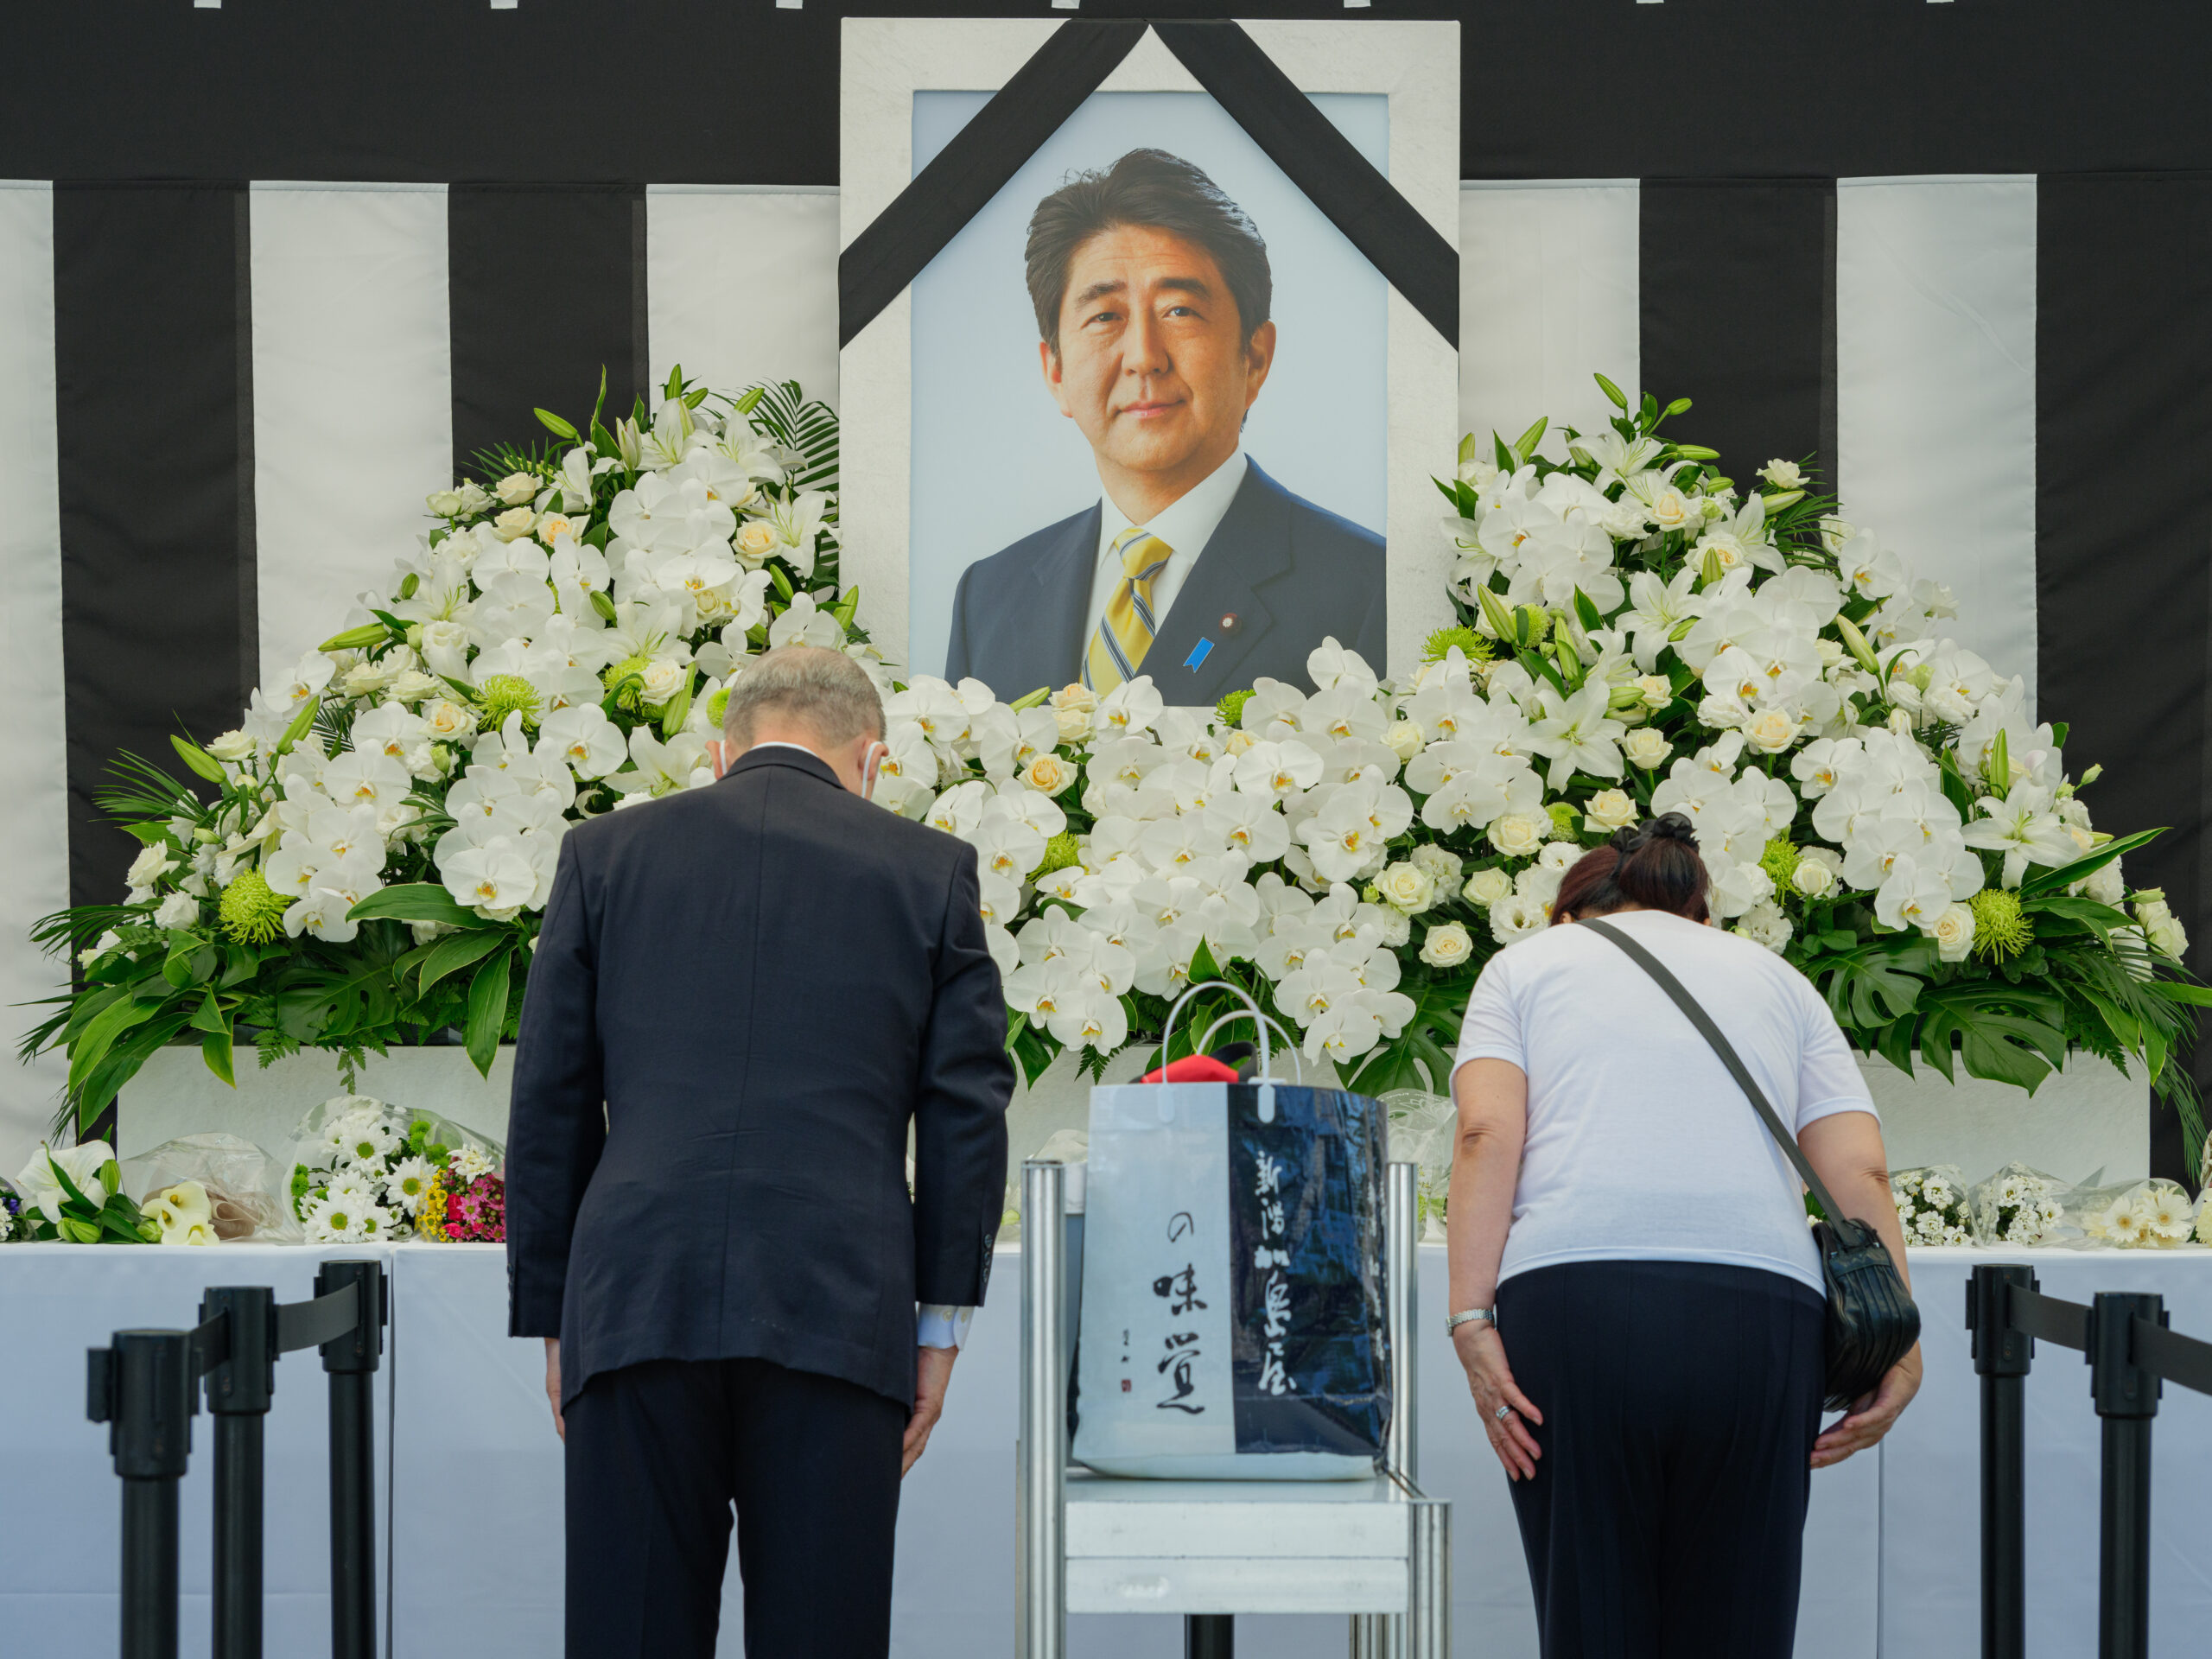 El polémico funeral de Shinzo Abe, ex primer ministro de Japón, en imágenes